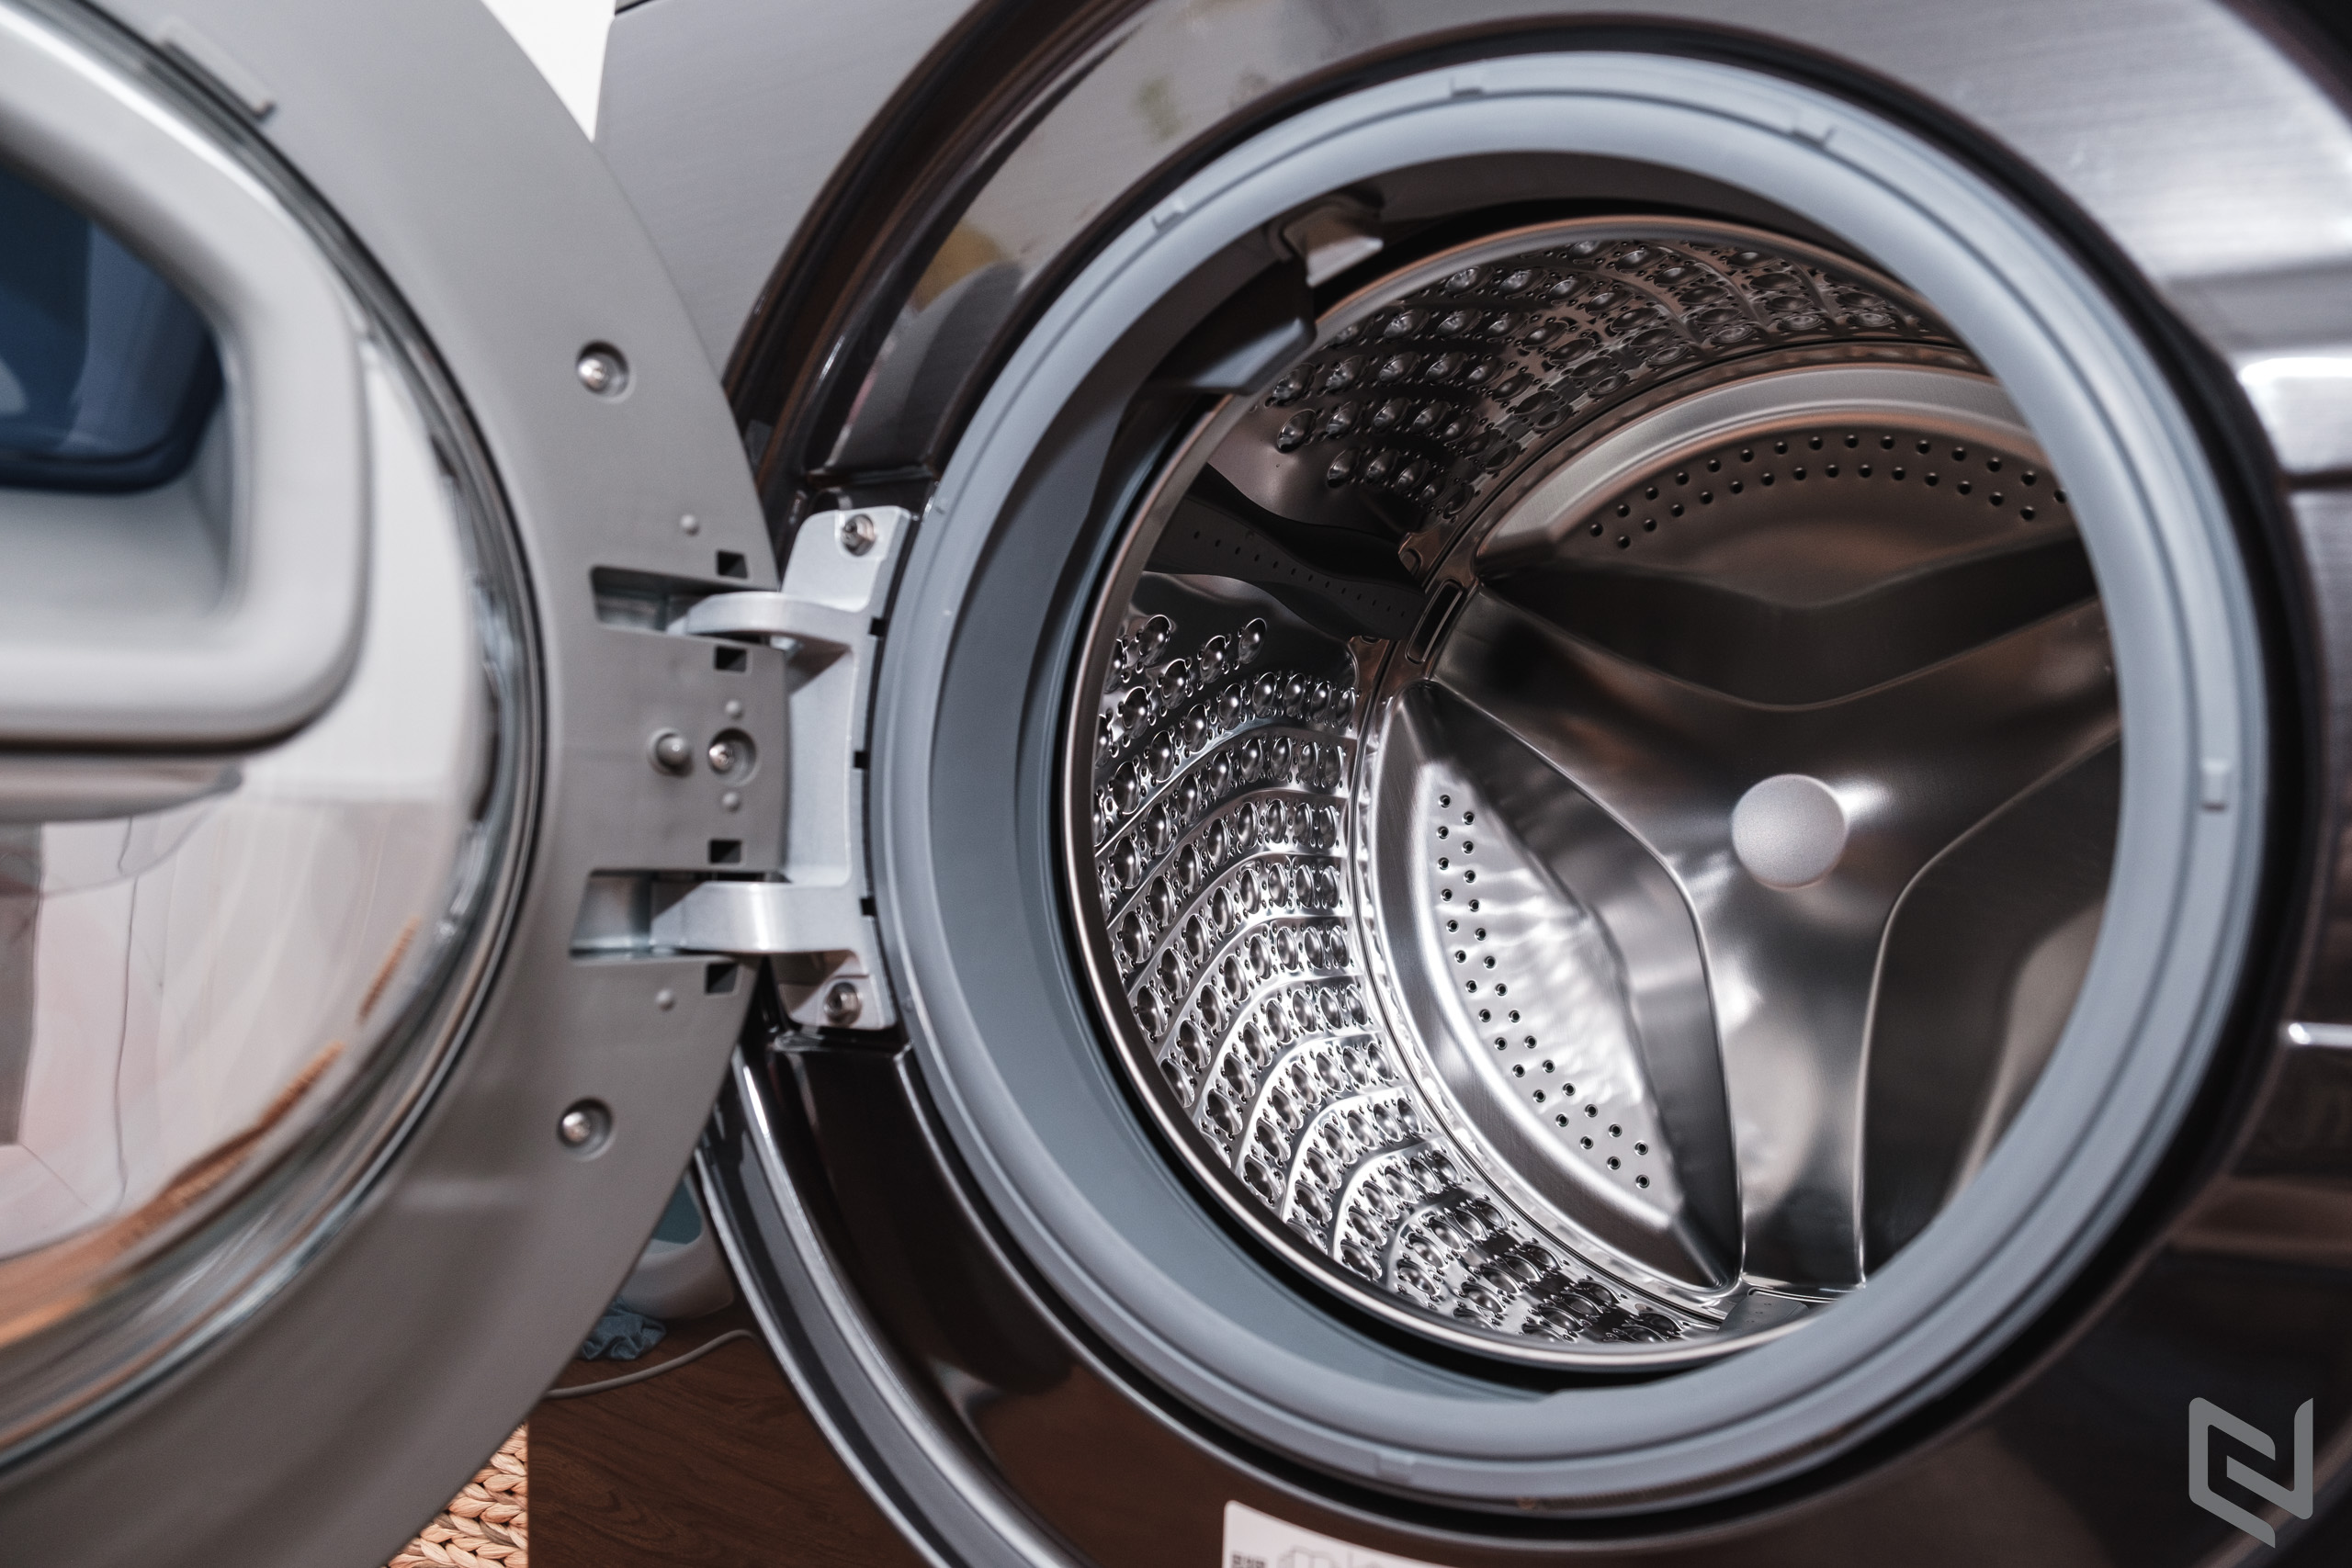 Đánh giá Máy giặt thông minh Samsung AI Ecobubble 12kg: Hoàn thiện cao cấp, nhiều công nghệ giúp giặt sạch và tiết kiệm hơn